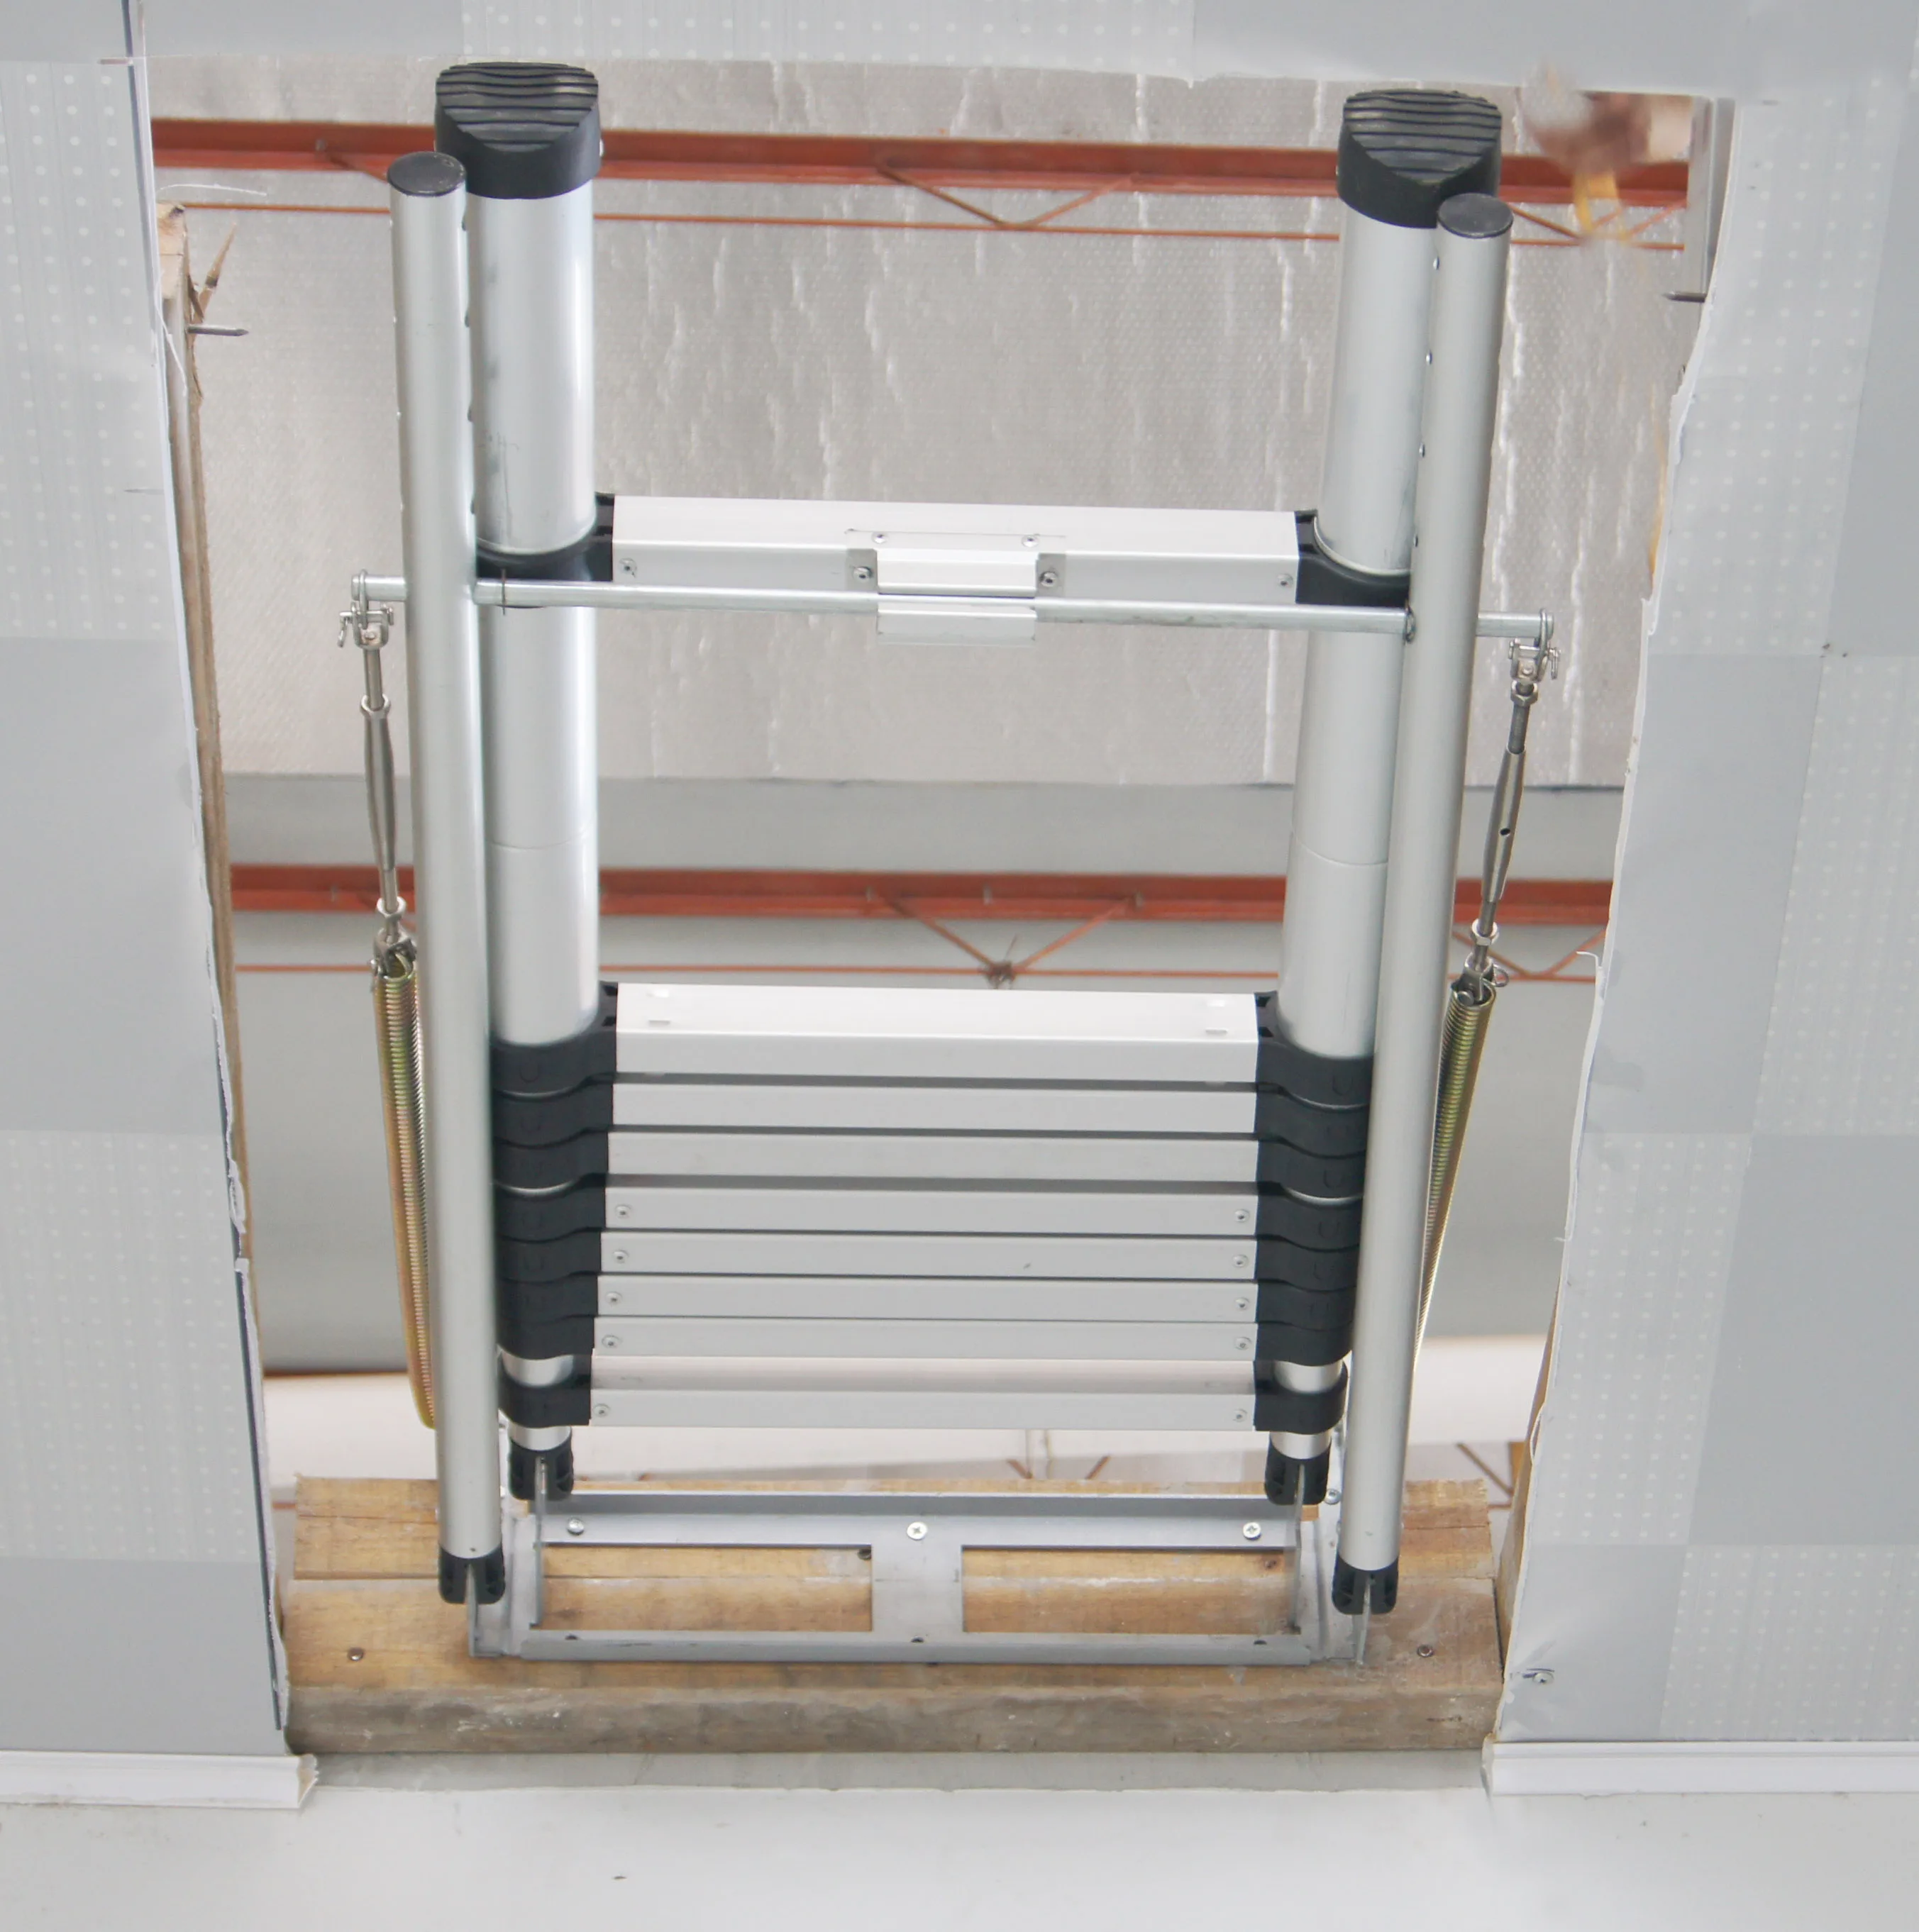 Loft escalera/de aluminio se ampliar plegable Triple/3, sección garret ático Loft escalera fabricada EN 14975 EN/ SGS